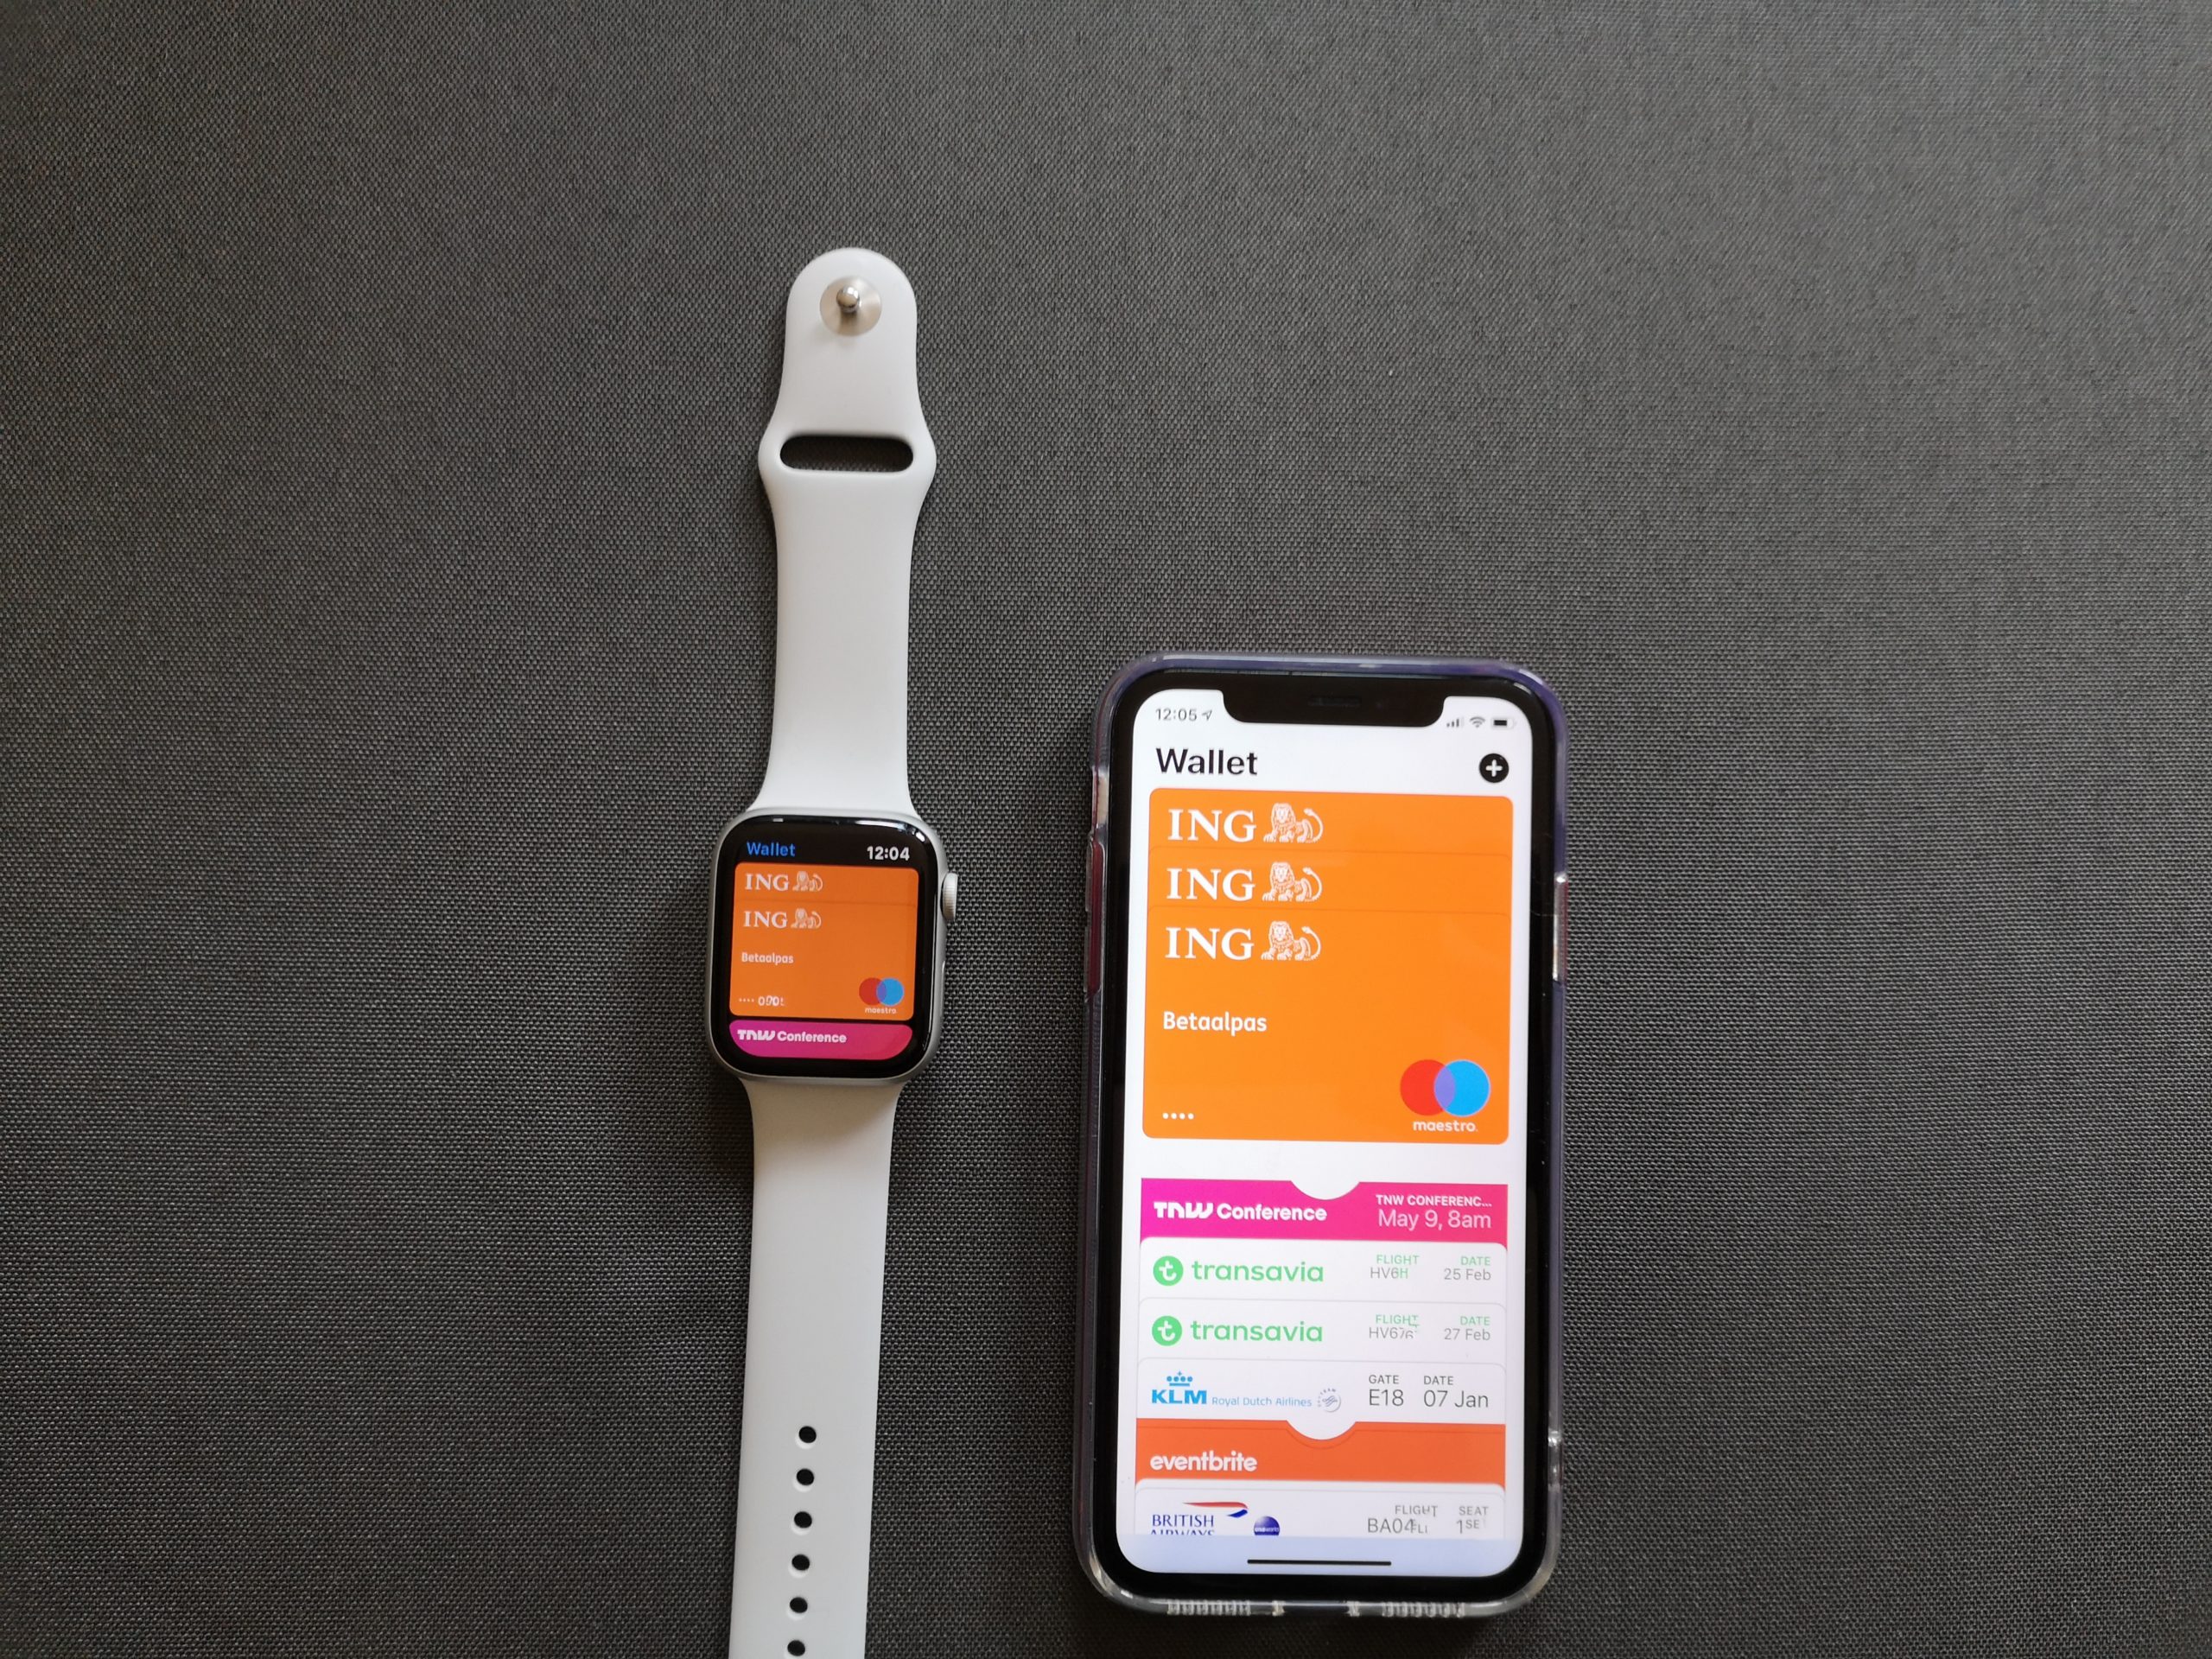 dief lunch Kalmerend ING introduceert ApplePay op telefoon en Apple Watch - GadgetGear.nl